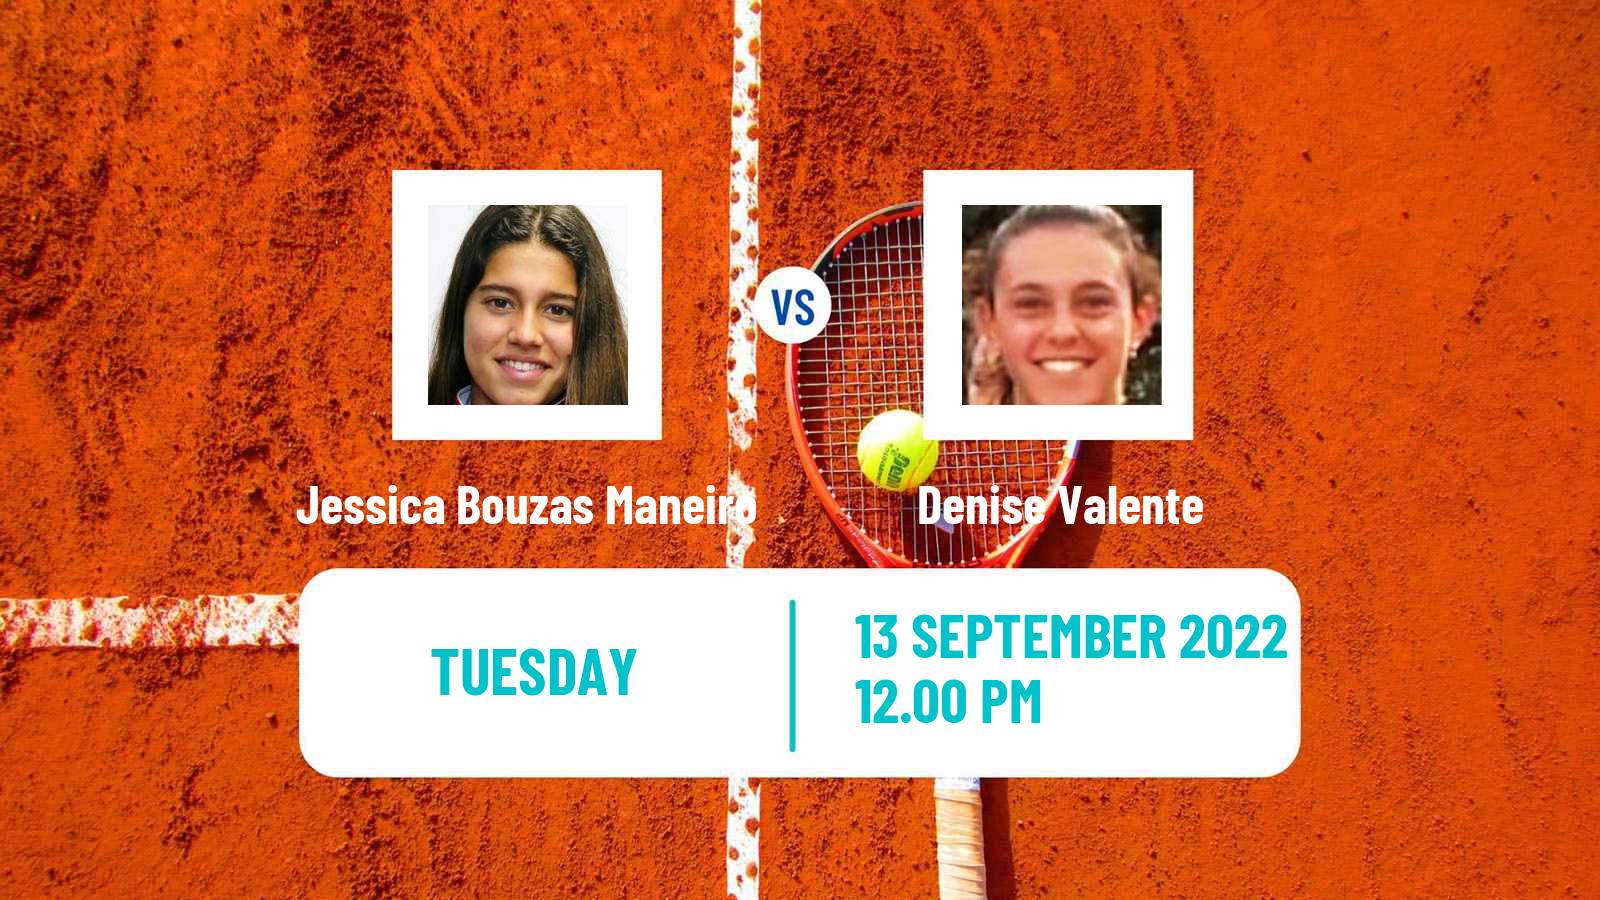 Tennis ITF Tournaments Jessica Bouzas Maneiro - Denise Valente